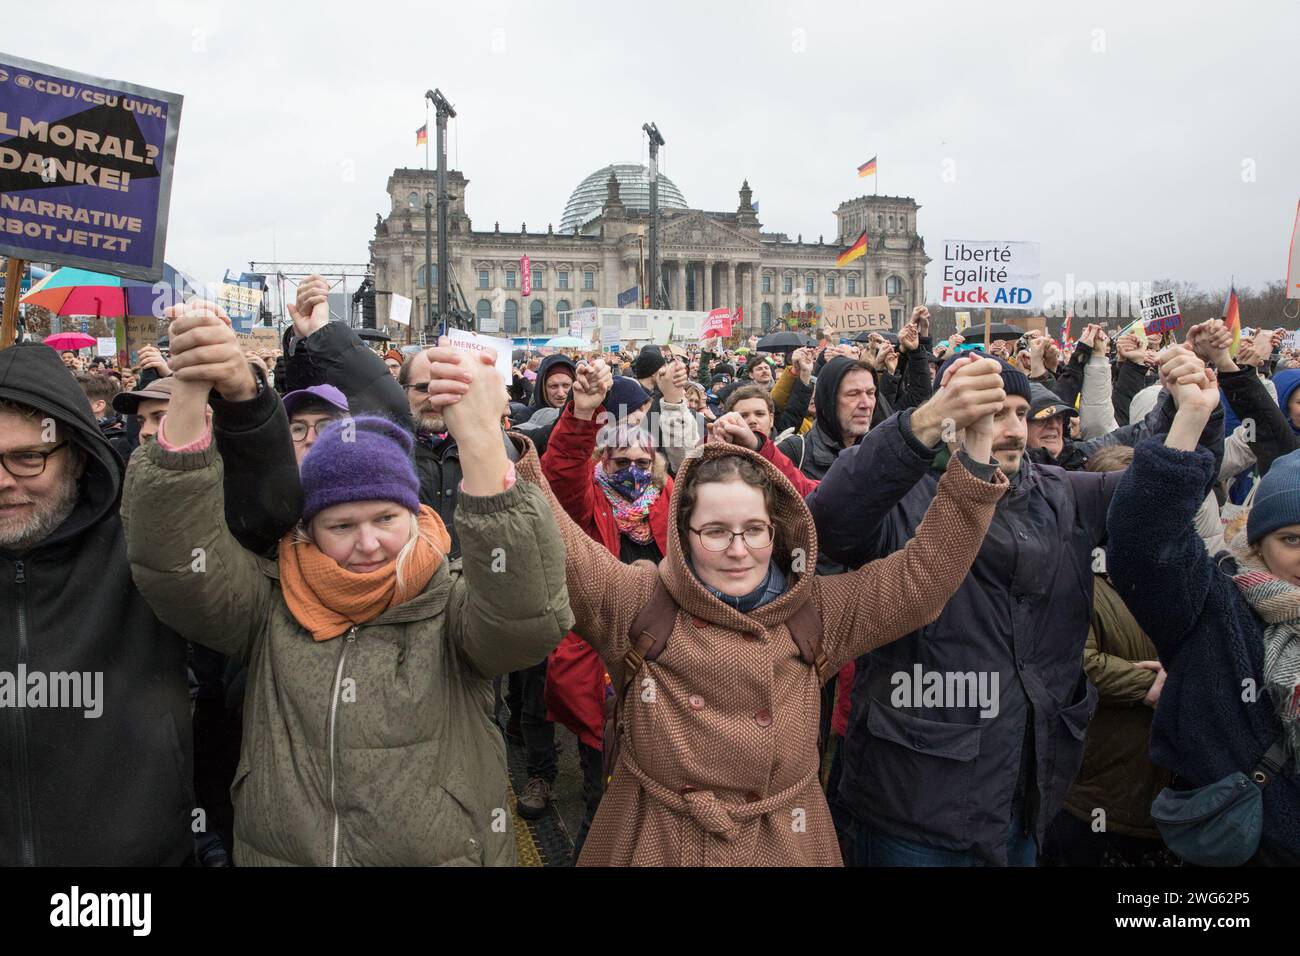 Berlino fu testimone di un monumentale raduno il 3 febbraio 2024, quando circa 300.000 manifestanti formarono un simbolico "firewall" contro l'estremismo di destra davanti al Bundestag sotto la bandiera WeAreTheFirewall. Questa massiccia mobilitazione risponde ai crescenti sentimenti di destra e alle violazioni dei diritti umani all'interno della società e della politica, sostenendo una maggiore tolleranza e una democrazia solida. Il raduno è stato organizzato dalla rete "mano in mano", che ha visto oltre 1.700 organizzazioni firmare una dichiarazione contro l'estremismo di destra, mostrando un fronte unito da un ampio spettro Foto Stock